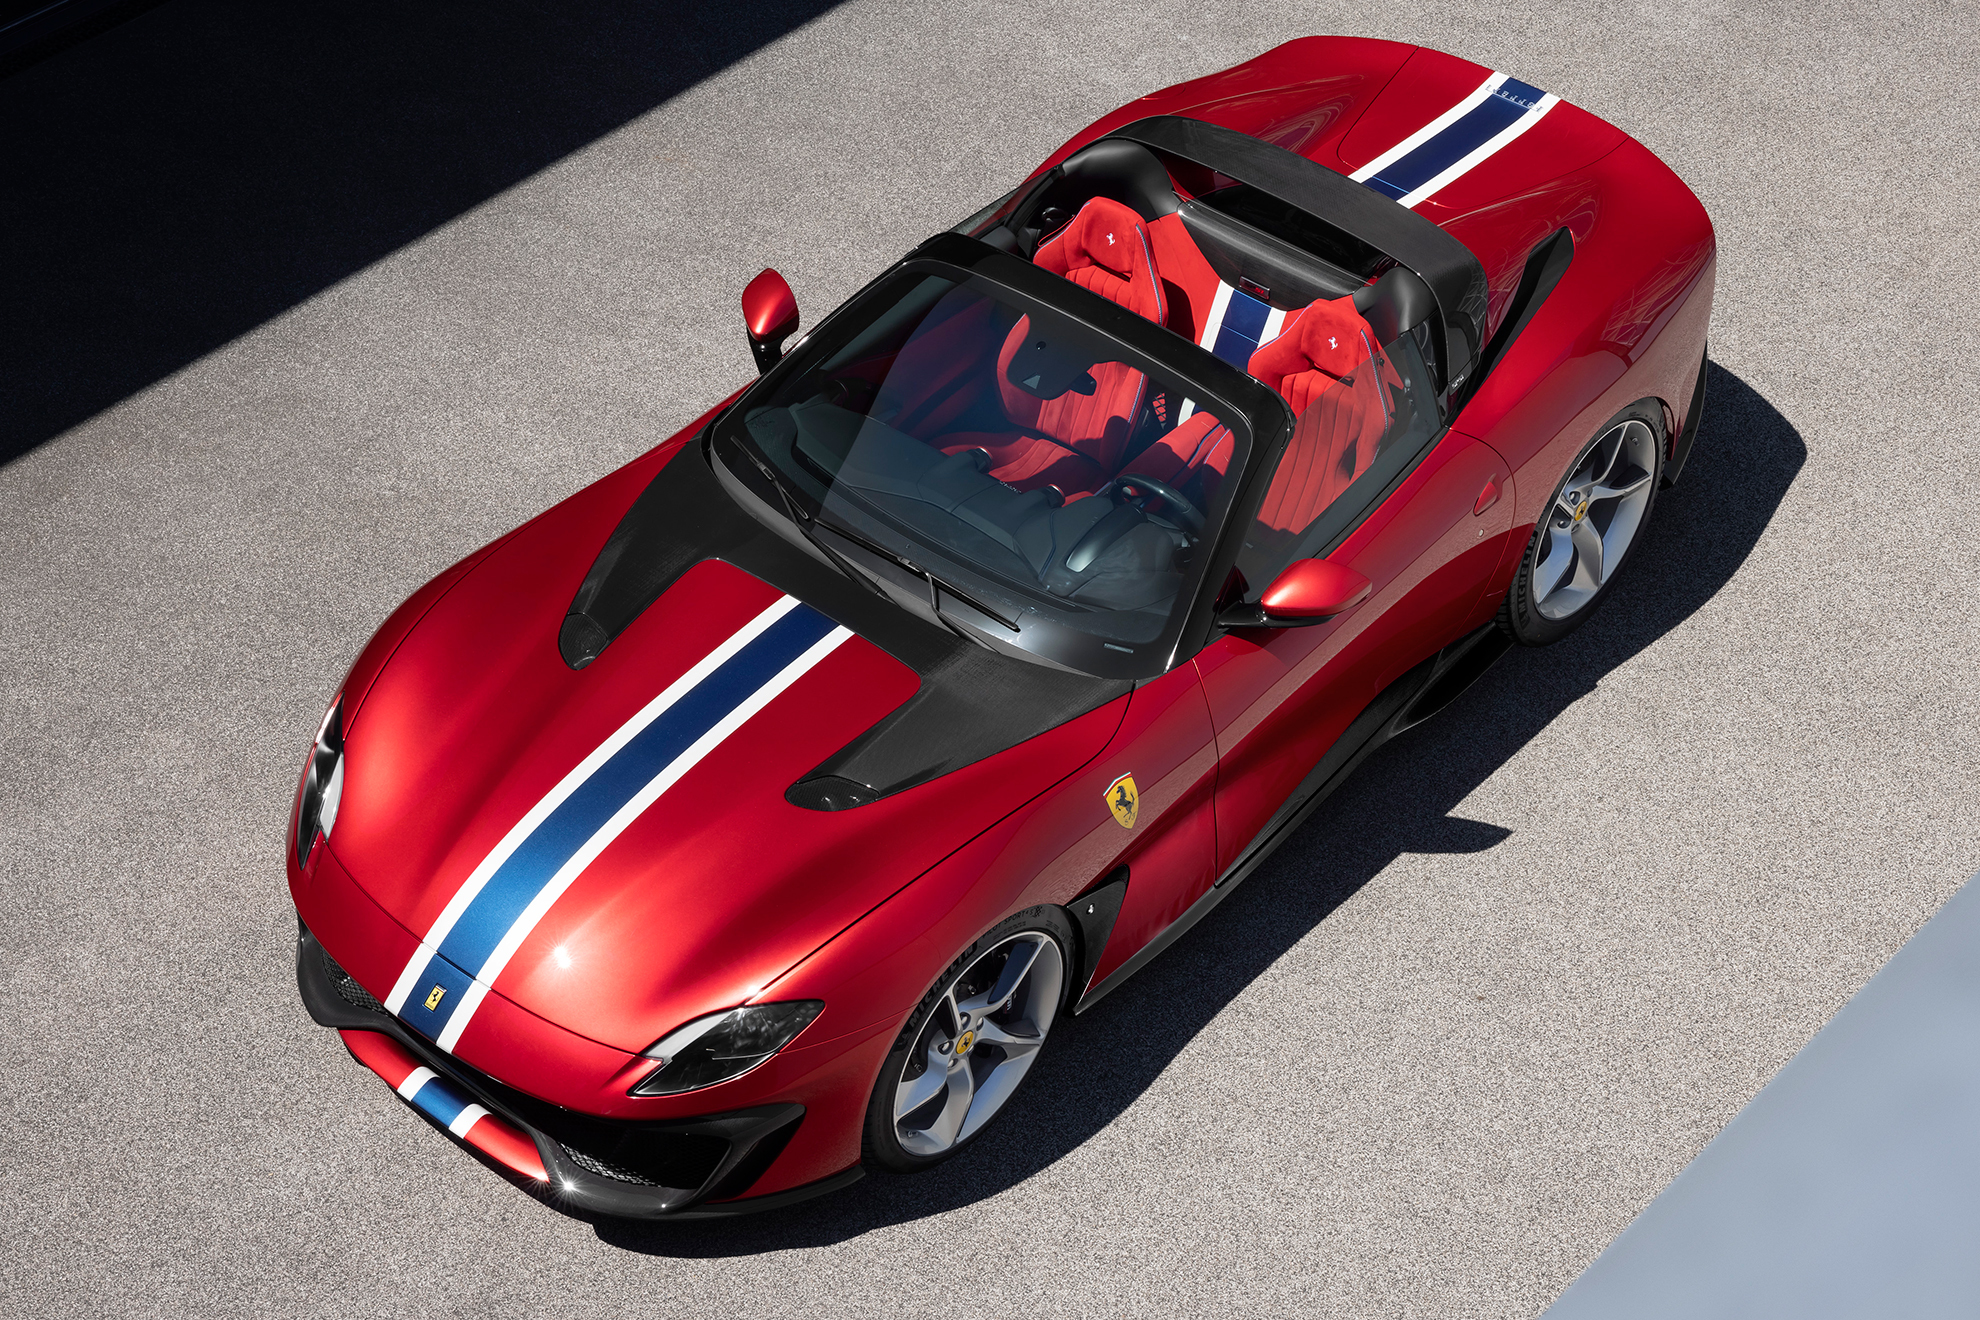 El coche mantiene la banda bicolor longitudinal también el interior. Foto: Ferrari.